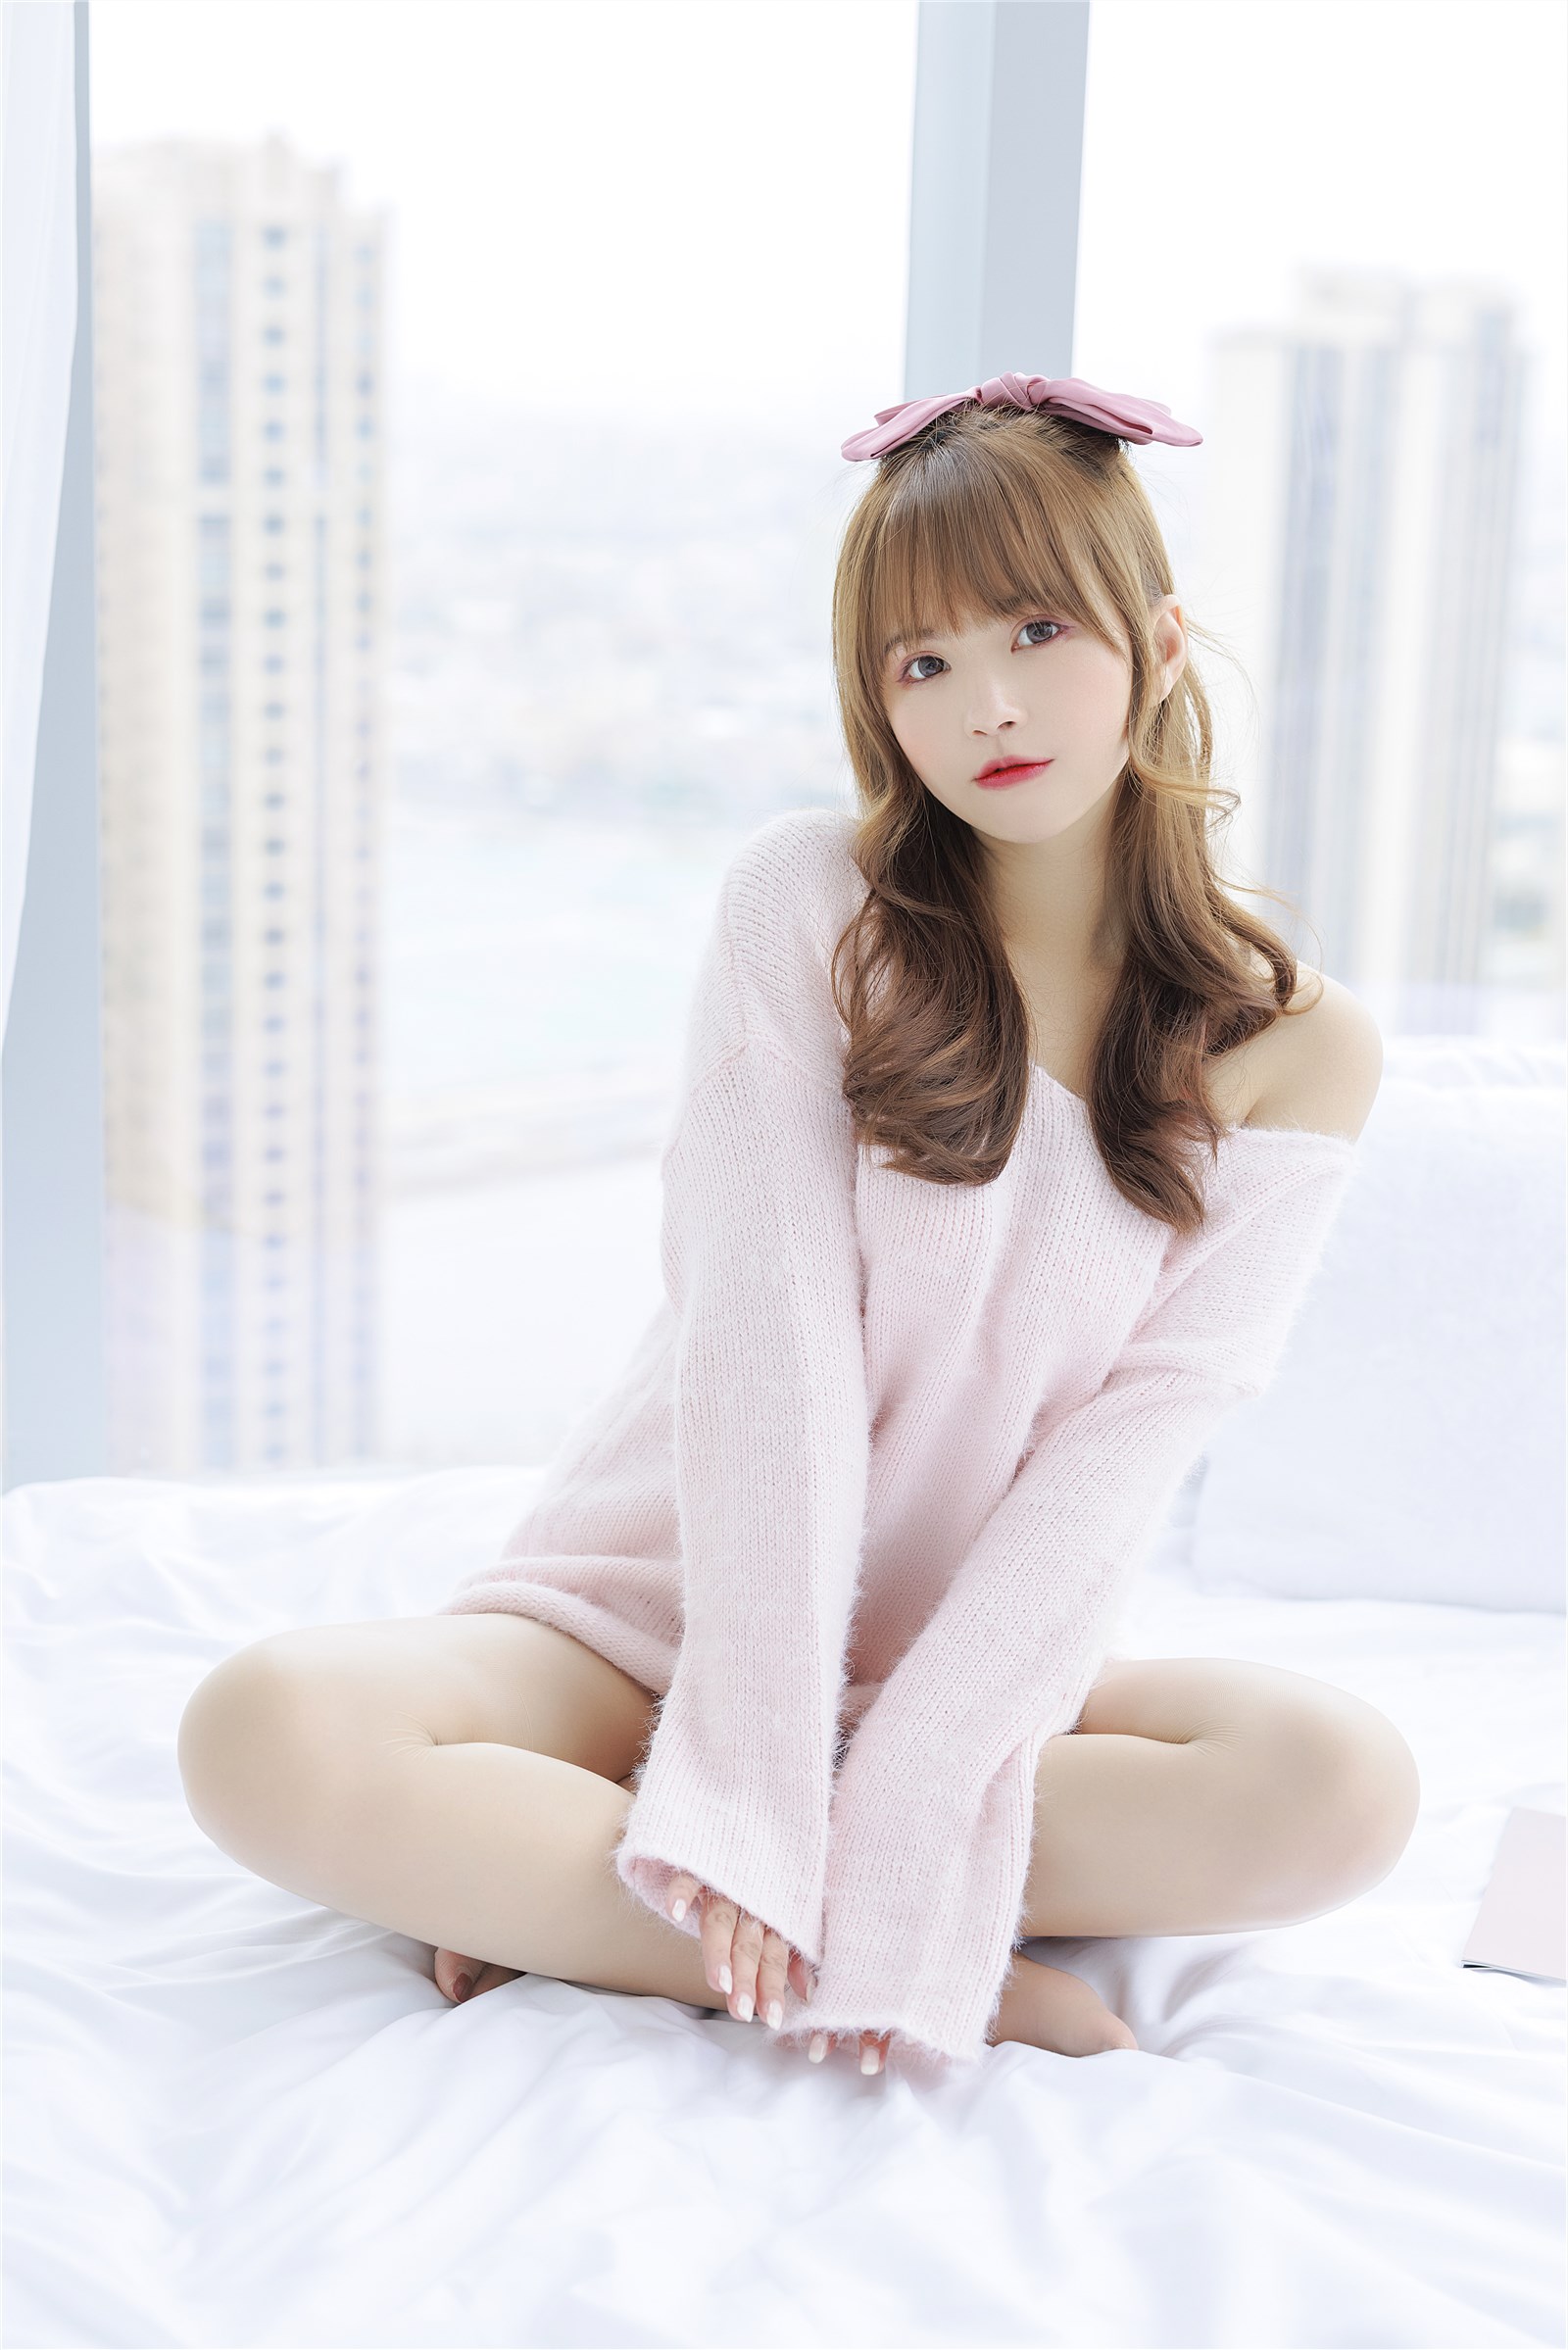 002. Zhang Siyun Nice - Internal purchase of watermark free pink sweater(5)